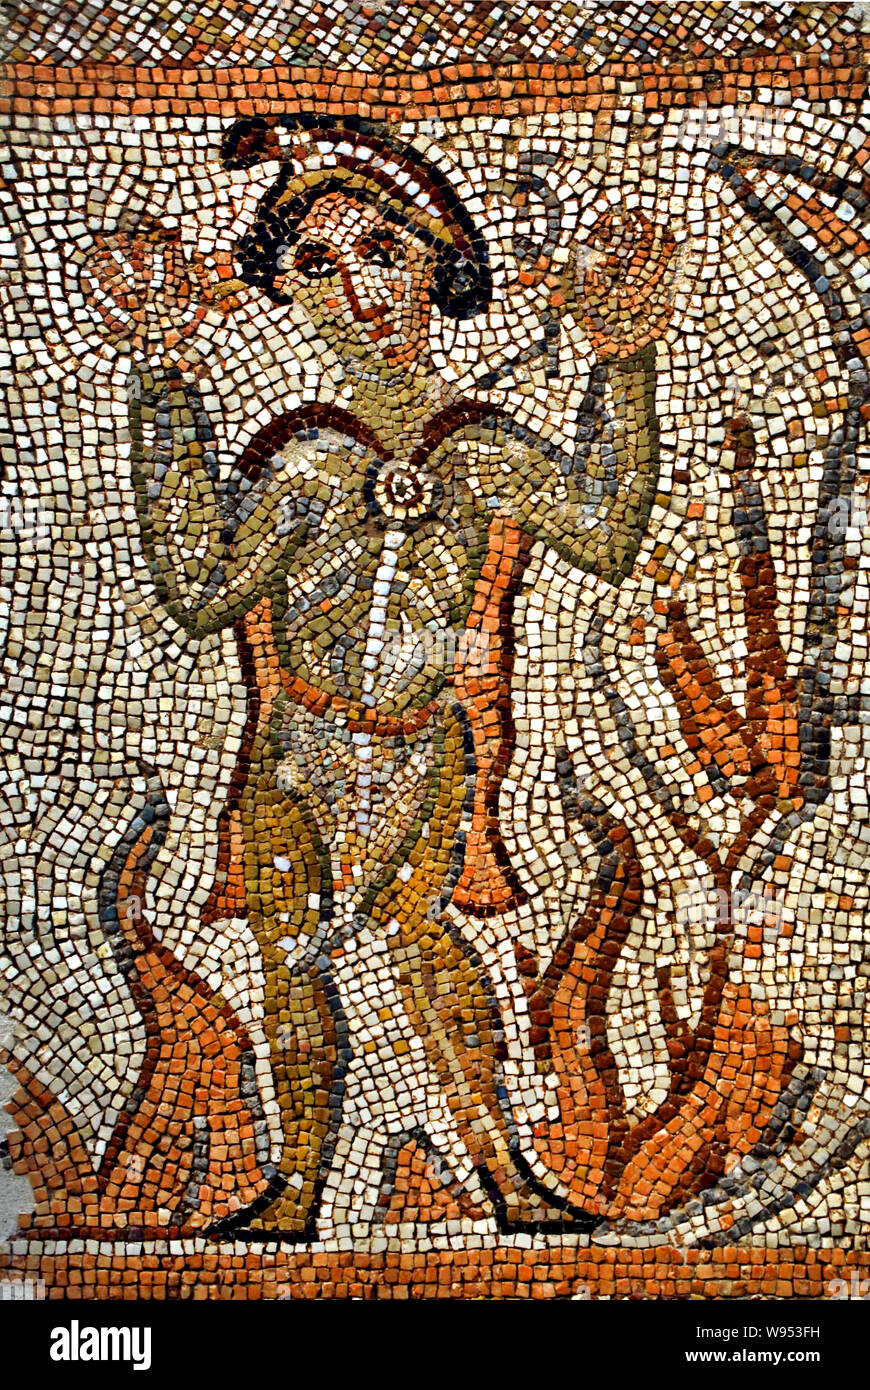 Ebraico - Siria nordorientale (questo giovane uomo è indetified) è. Misael, uno dei tre ebrei gettati in furia dopo aver rifiutato di adorare la statua di Nabucodonosor, e miracolosamente risparmiata dalle fiamme) Daniel's prenota (3,1-30) mosaico - cubetti di marmo e calcare 5a-6a secolo D.C. Foto Stock